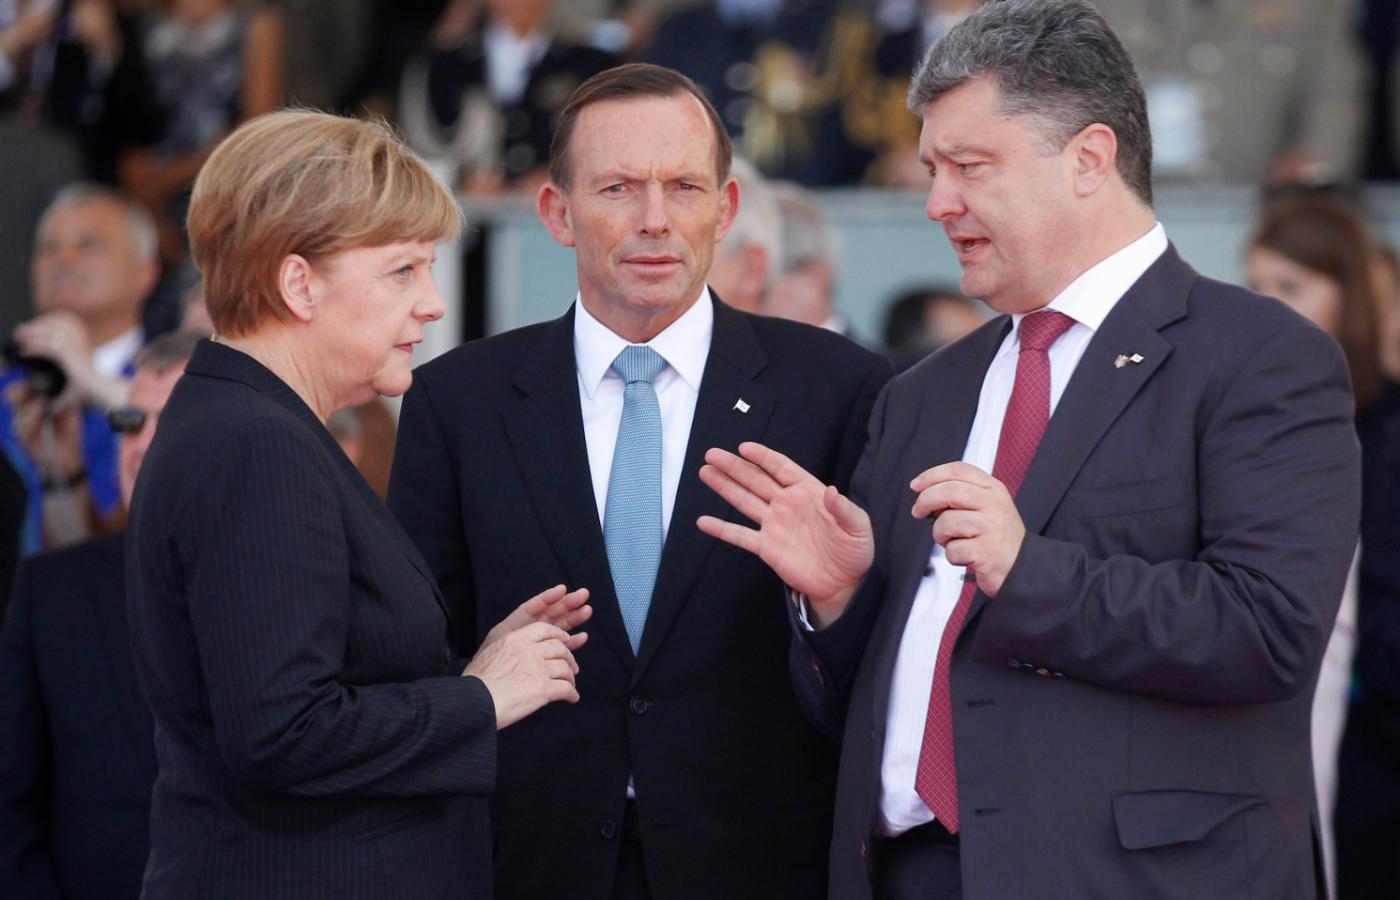 Kanclerz Niemiec Angela Merkel rozmawia z prezydentem Ukrainy Petro Poroszenką oraz australijskim premierem Tonym Abbottem we Francji, 6 czerwca 2014